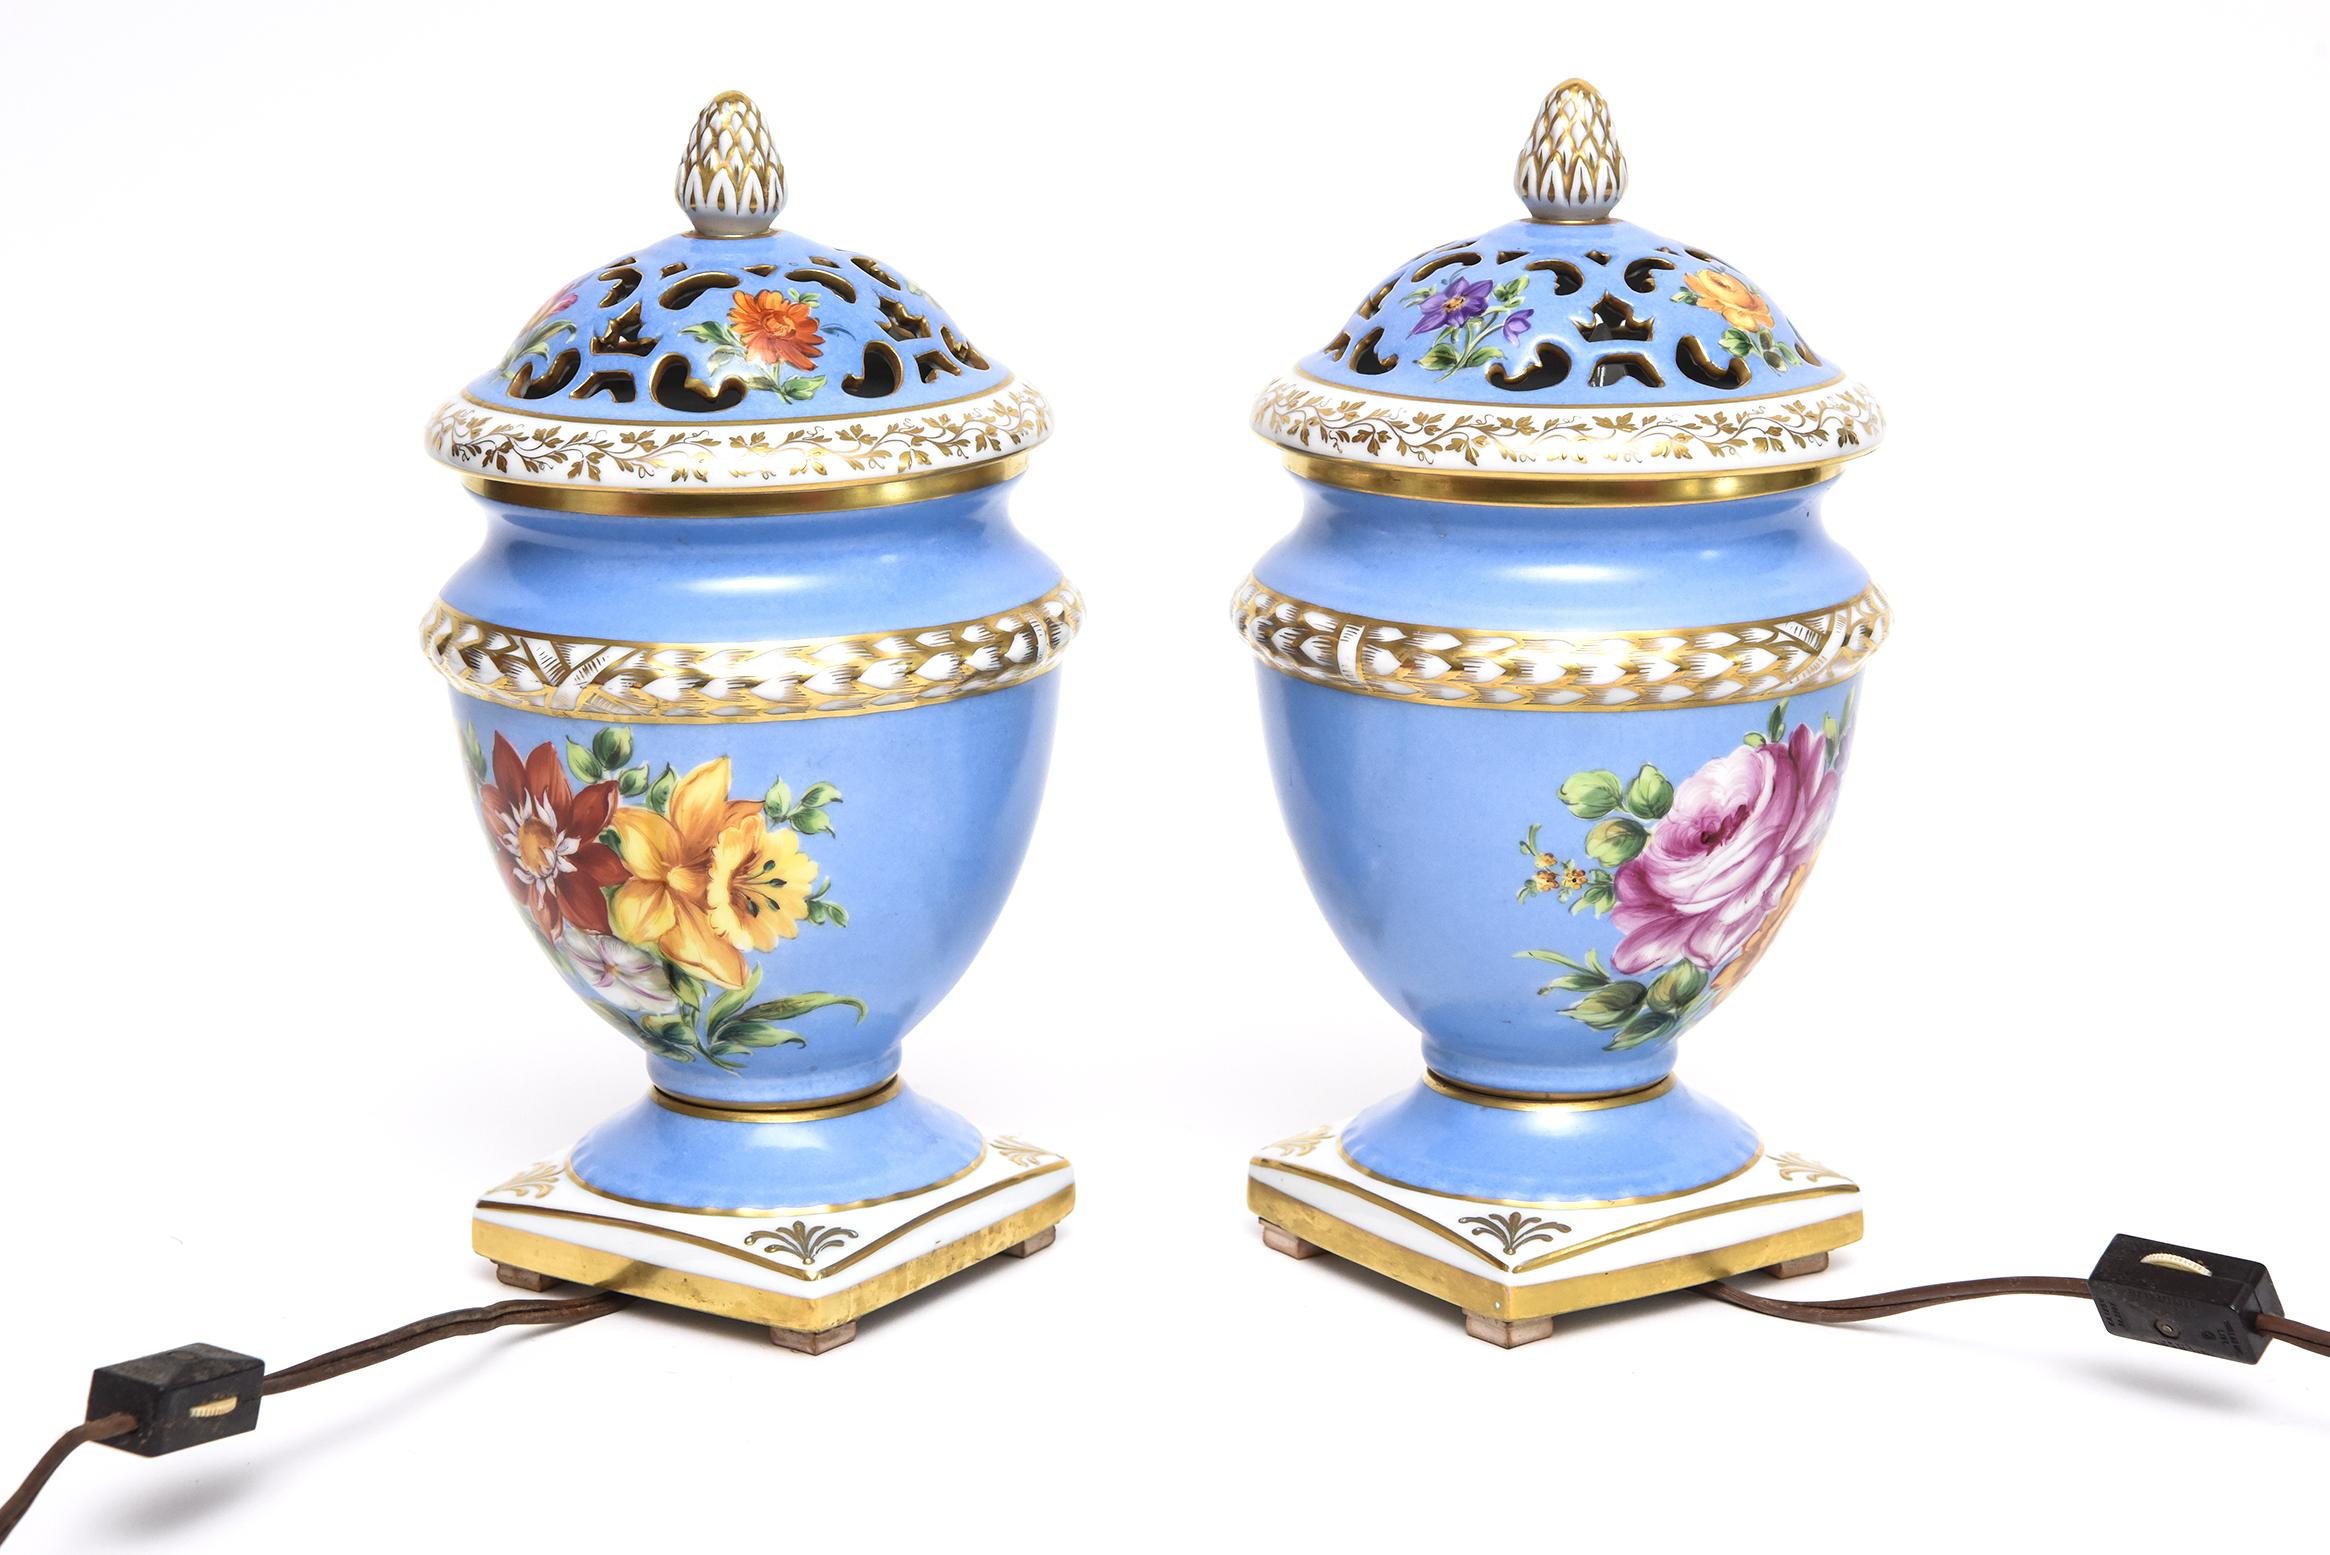 Pair of Le Tallec Paris Floral Blue Gilt Porcelain Pot Pourri Perfume Urns Lamps For Sale 1